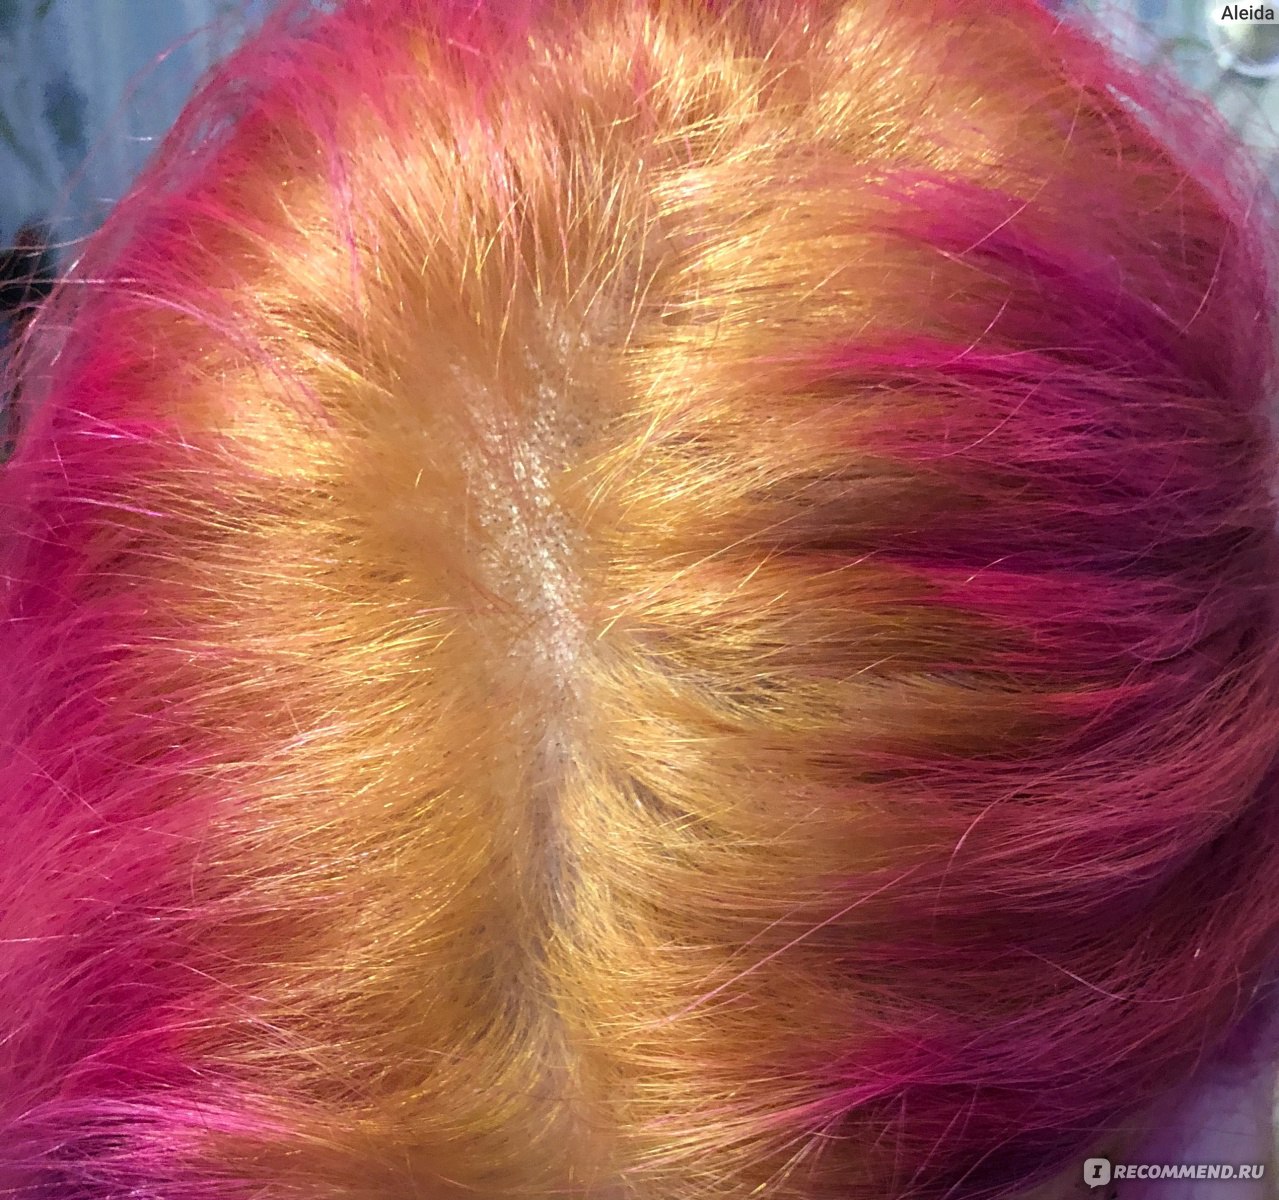 Как осветлить волосы краской kapous 1000